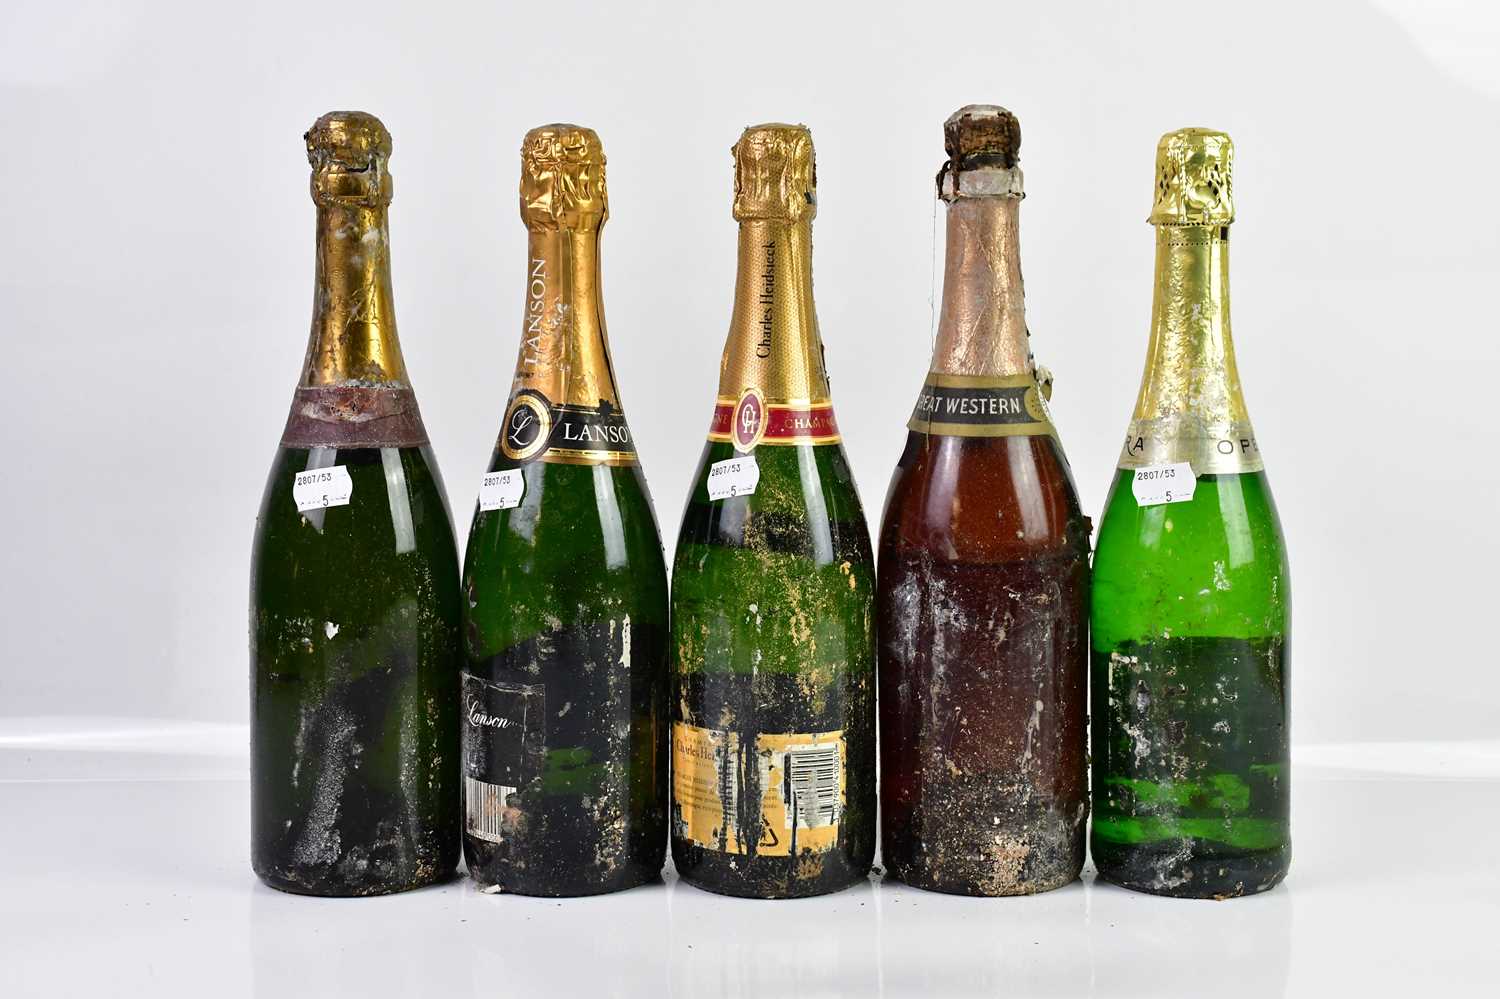 CHAMPAGNE/SPARKLING WINE; five bottles including Charles Heidsieck Brut Reserve, Lanson etc. - Image 2 of 2